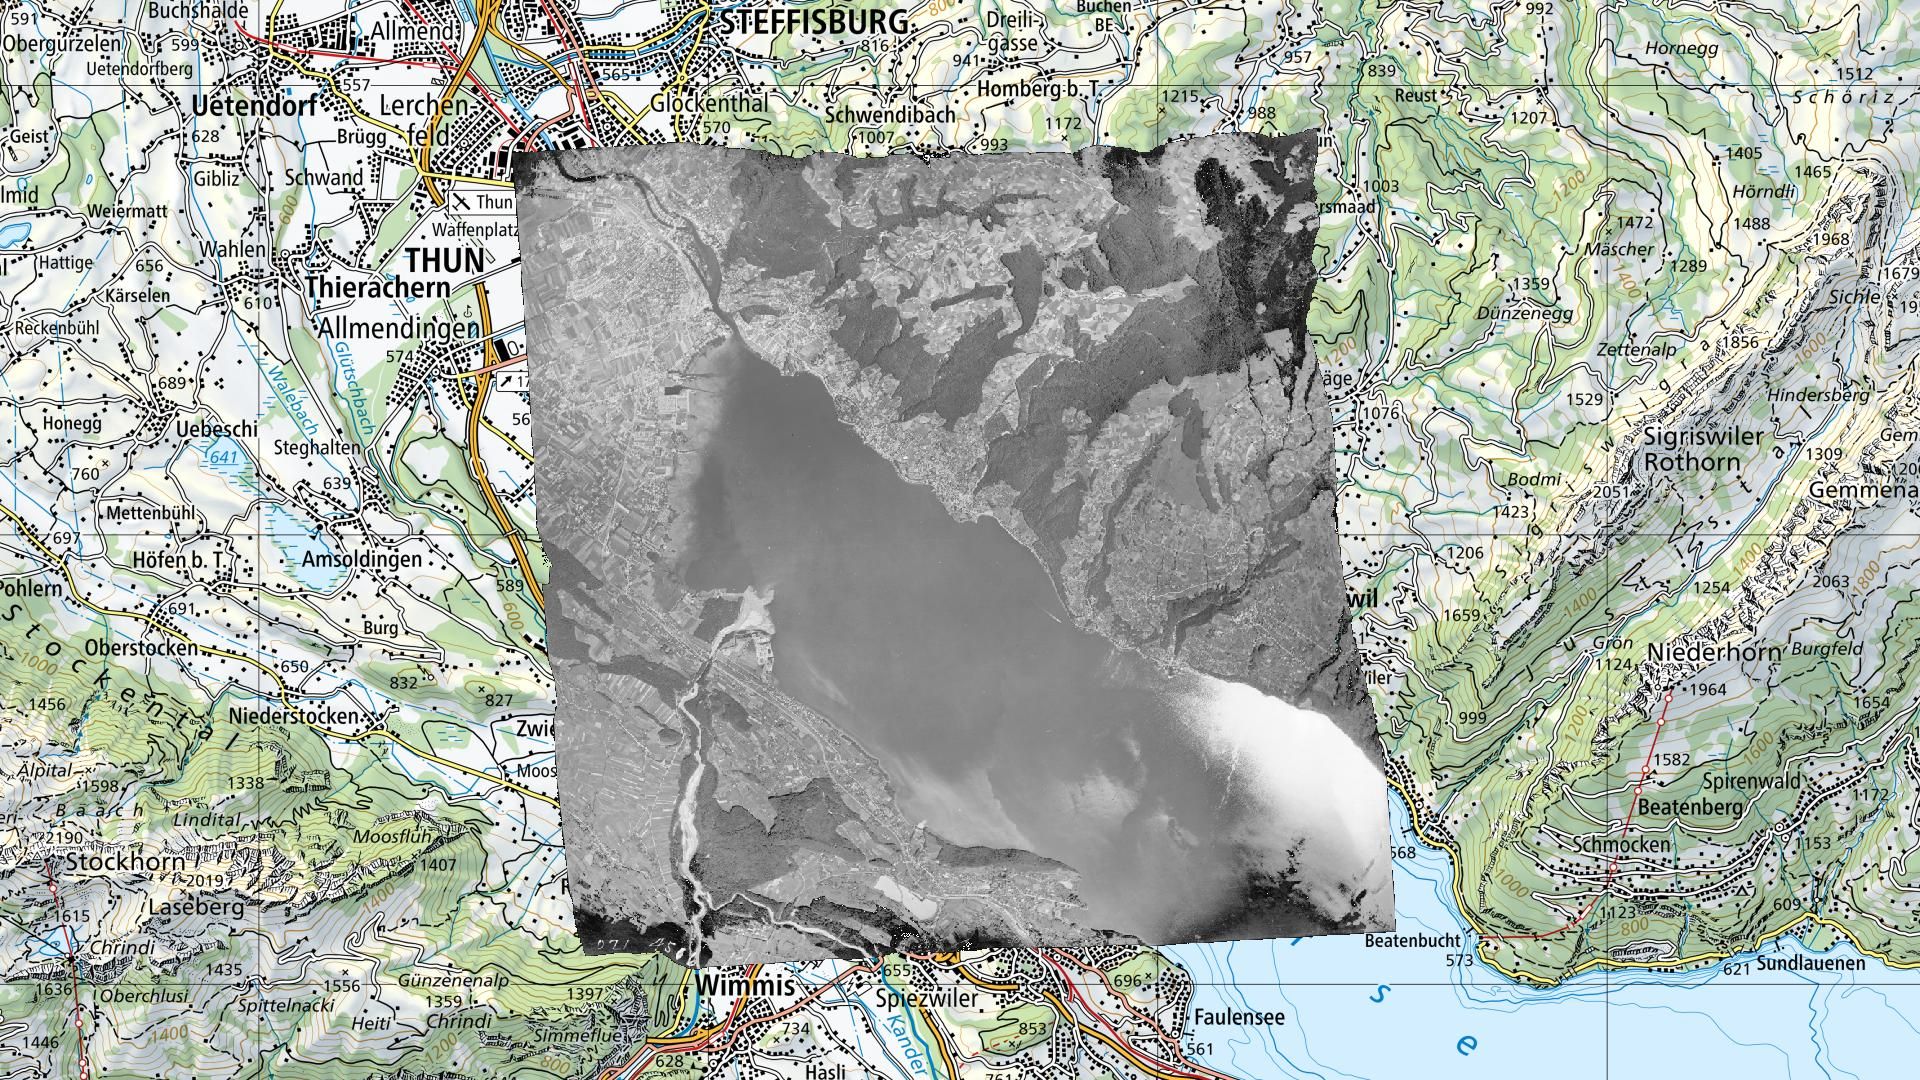 Orthophoto di un'immagine aerea swisstopo b/n sovrapposta alla carta nazionale in un'applicazione GIS.